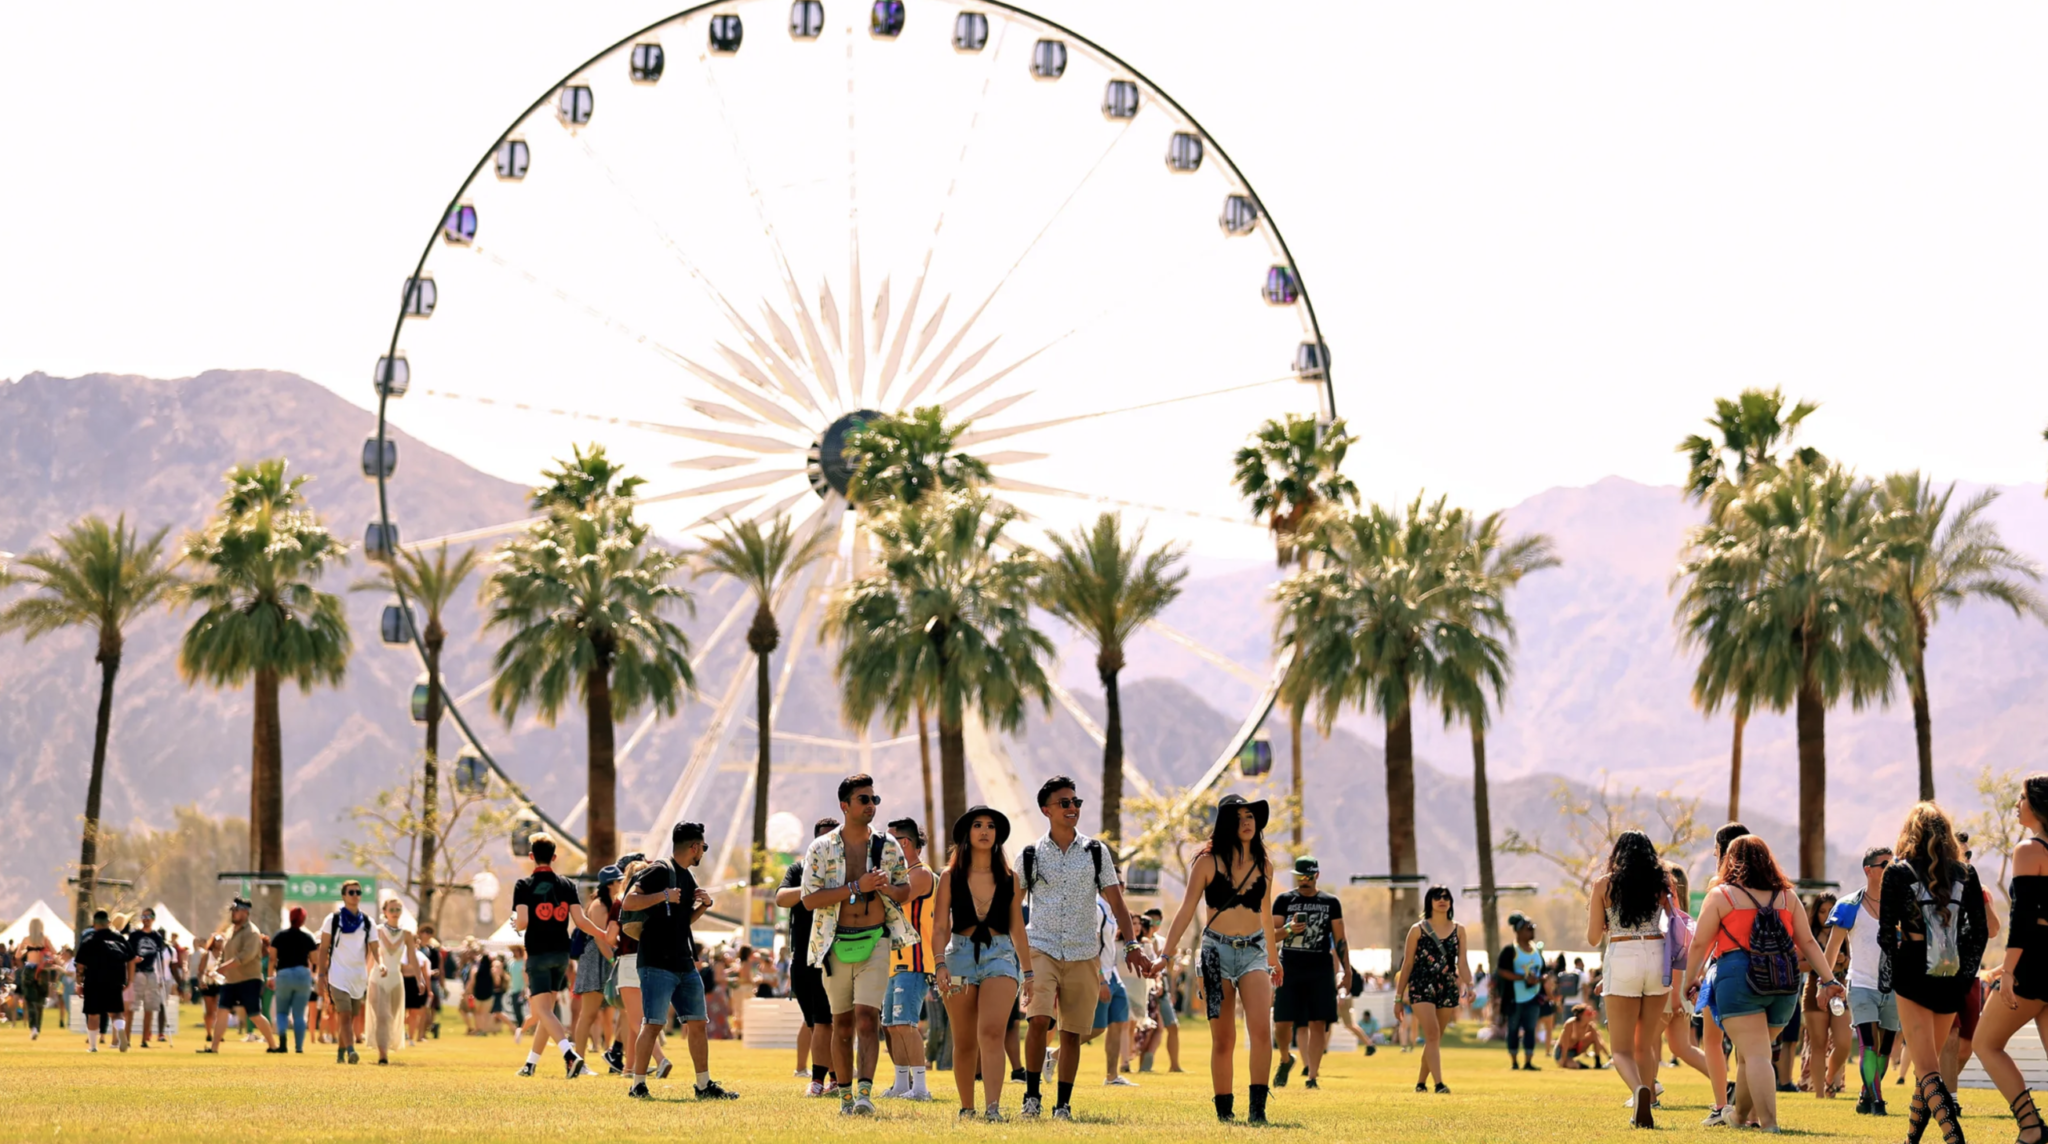 People enjoying Coachella festival, Indio